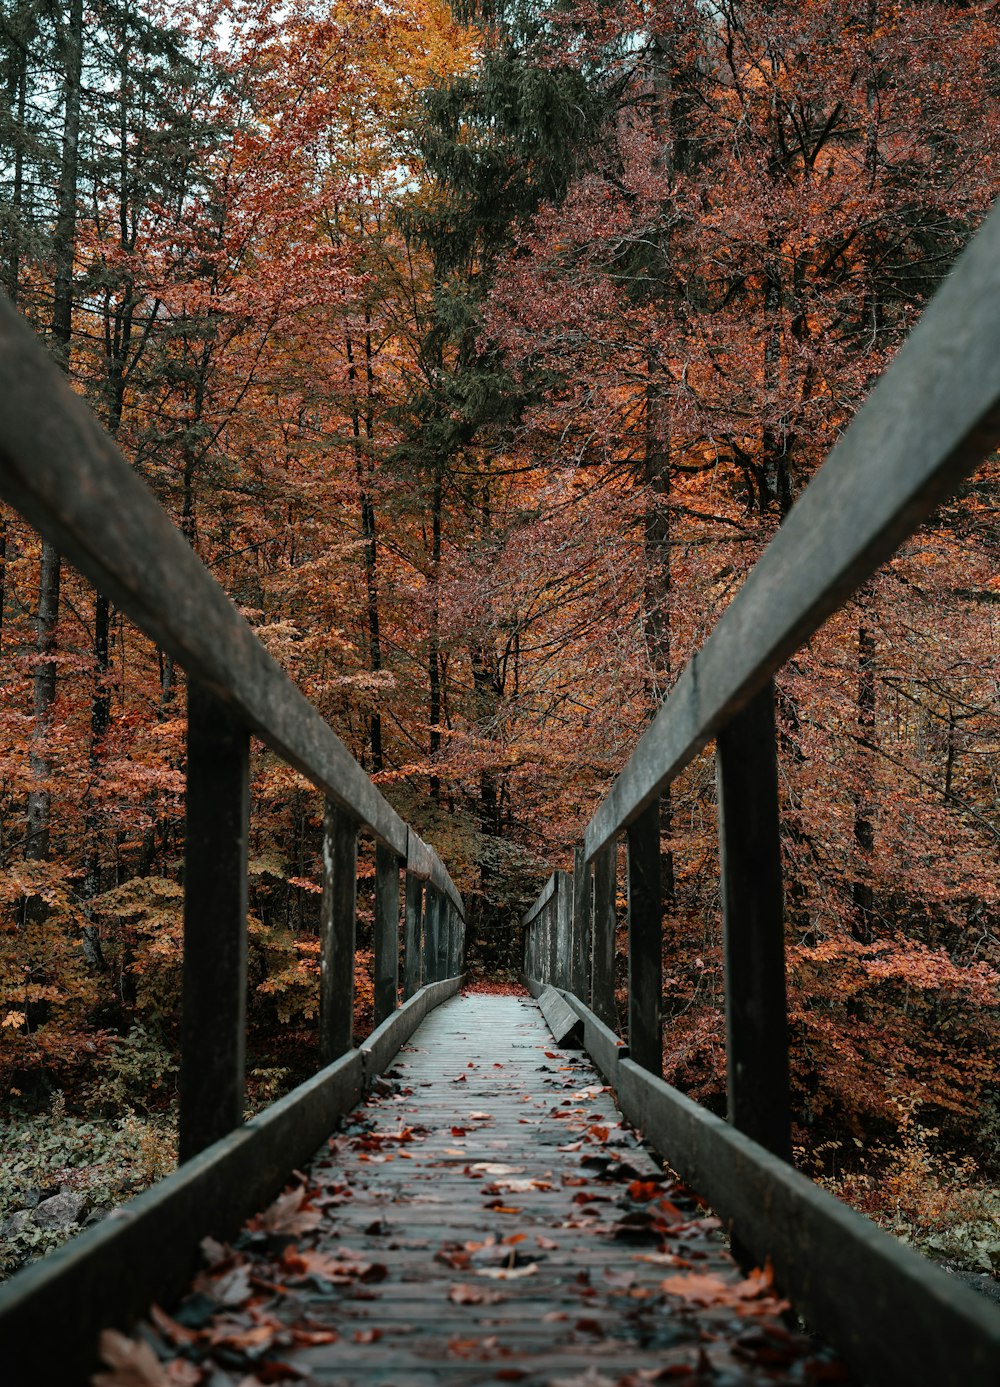 ponte di legno marrone nella foresta durante il giorno